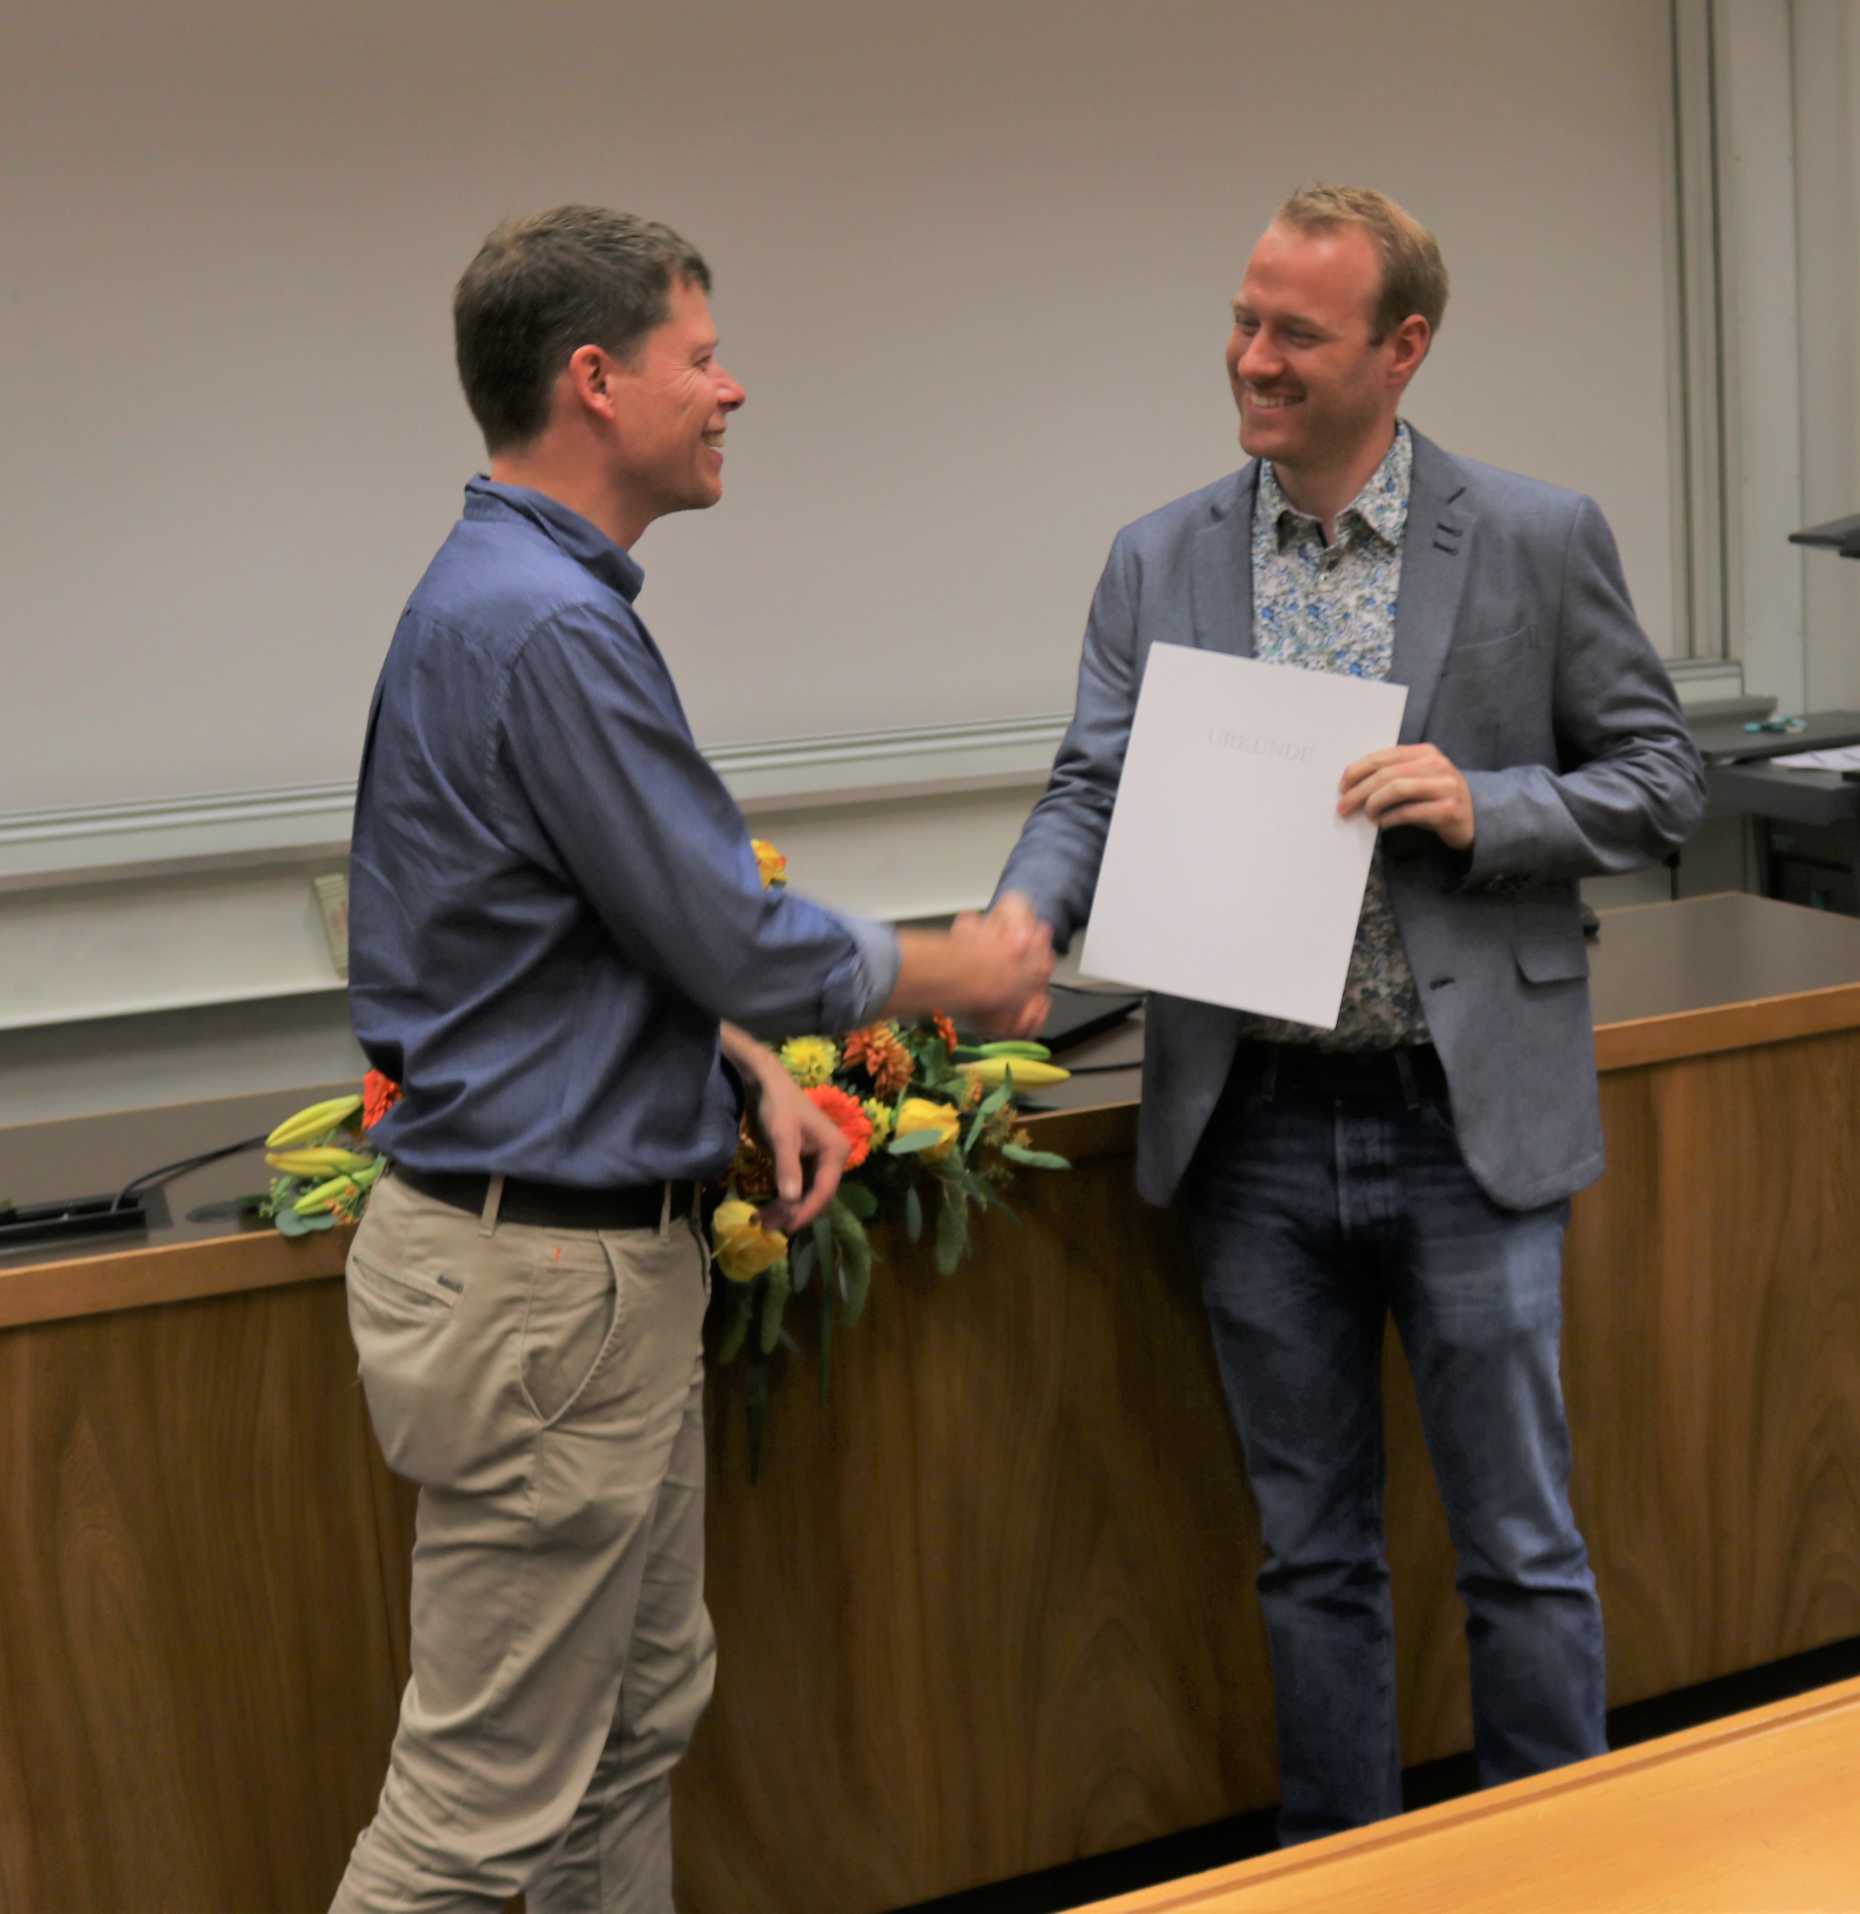 Prof. Adey awards Dr. Jürgen Hackl